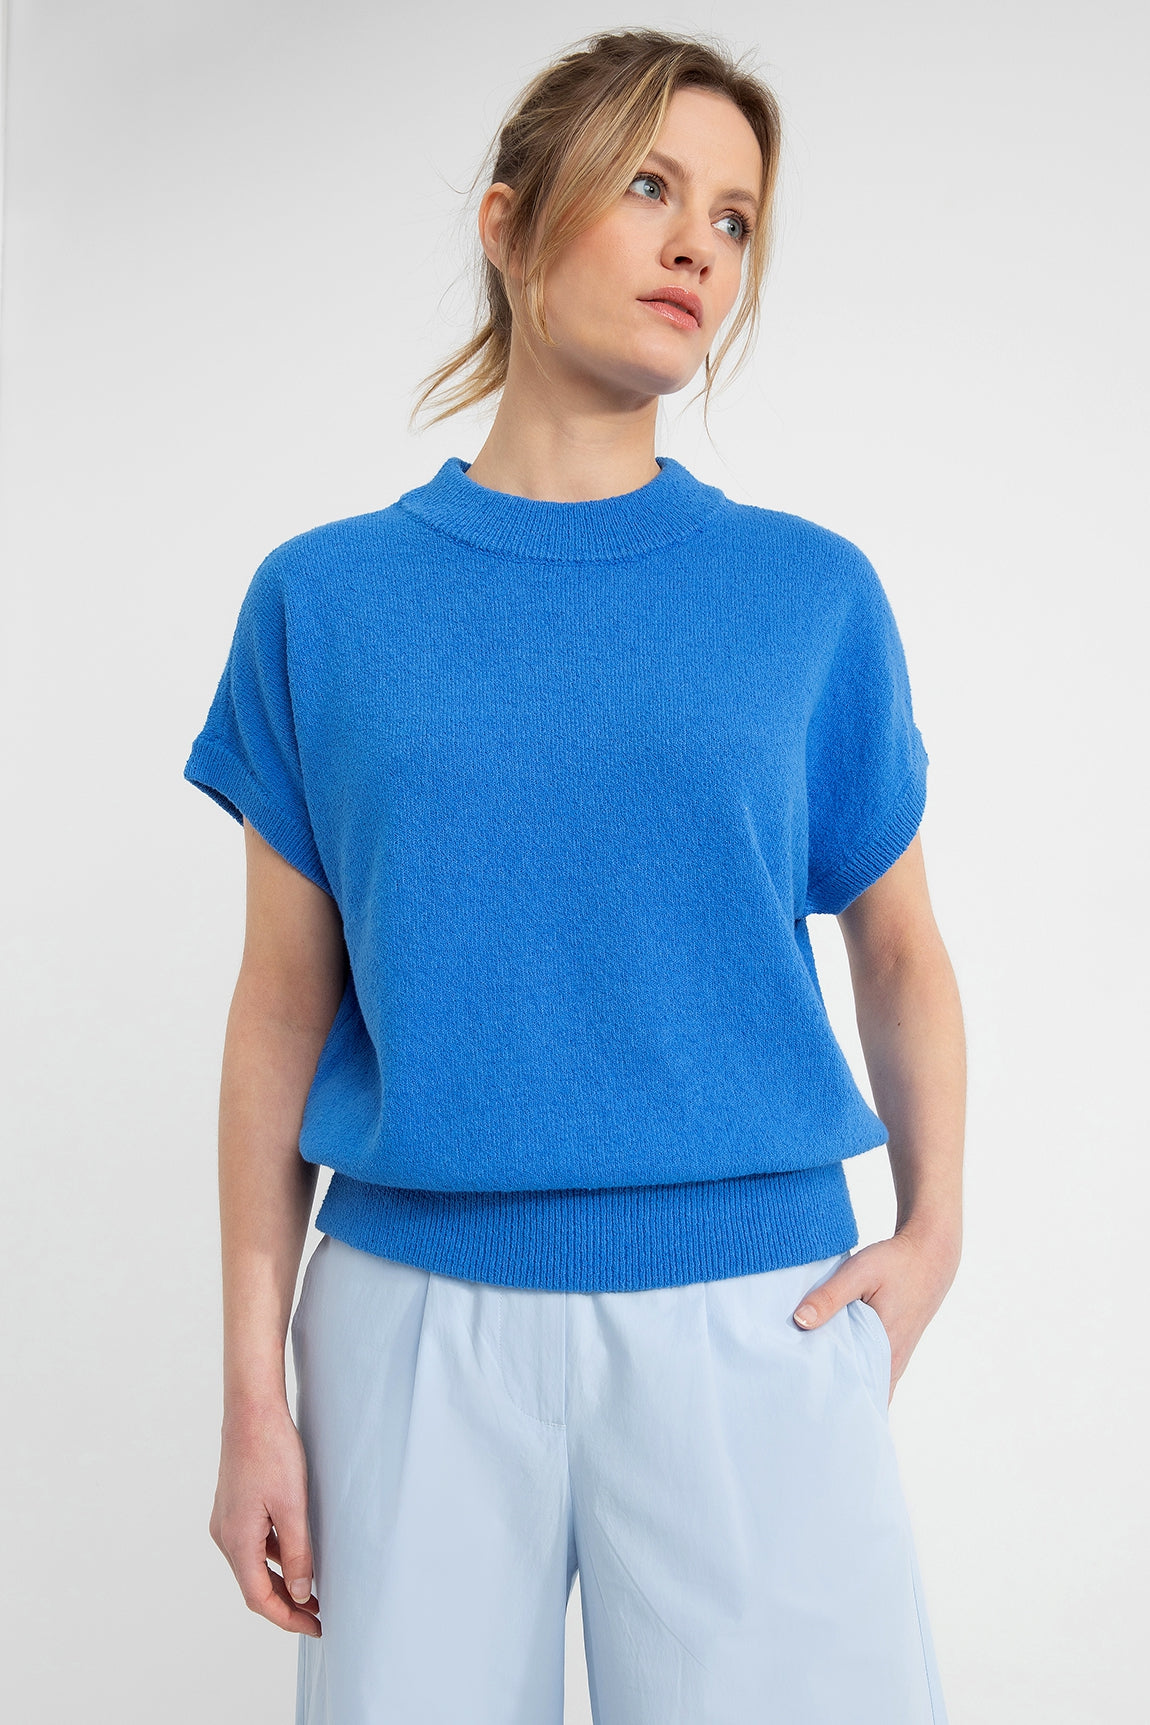 Dian sweater | Cobalt Blue